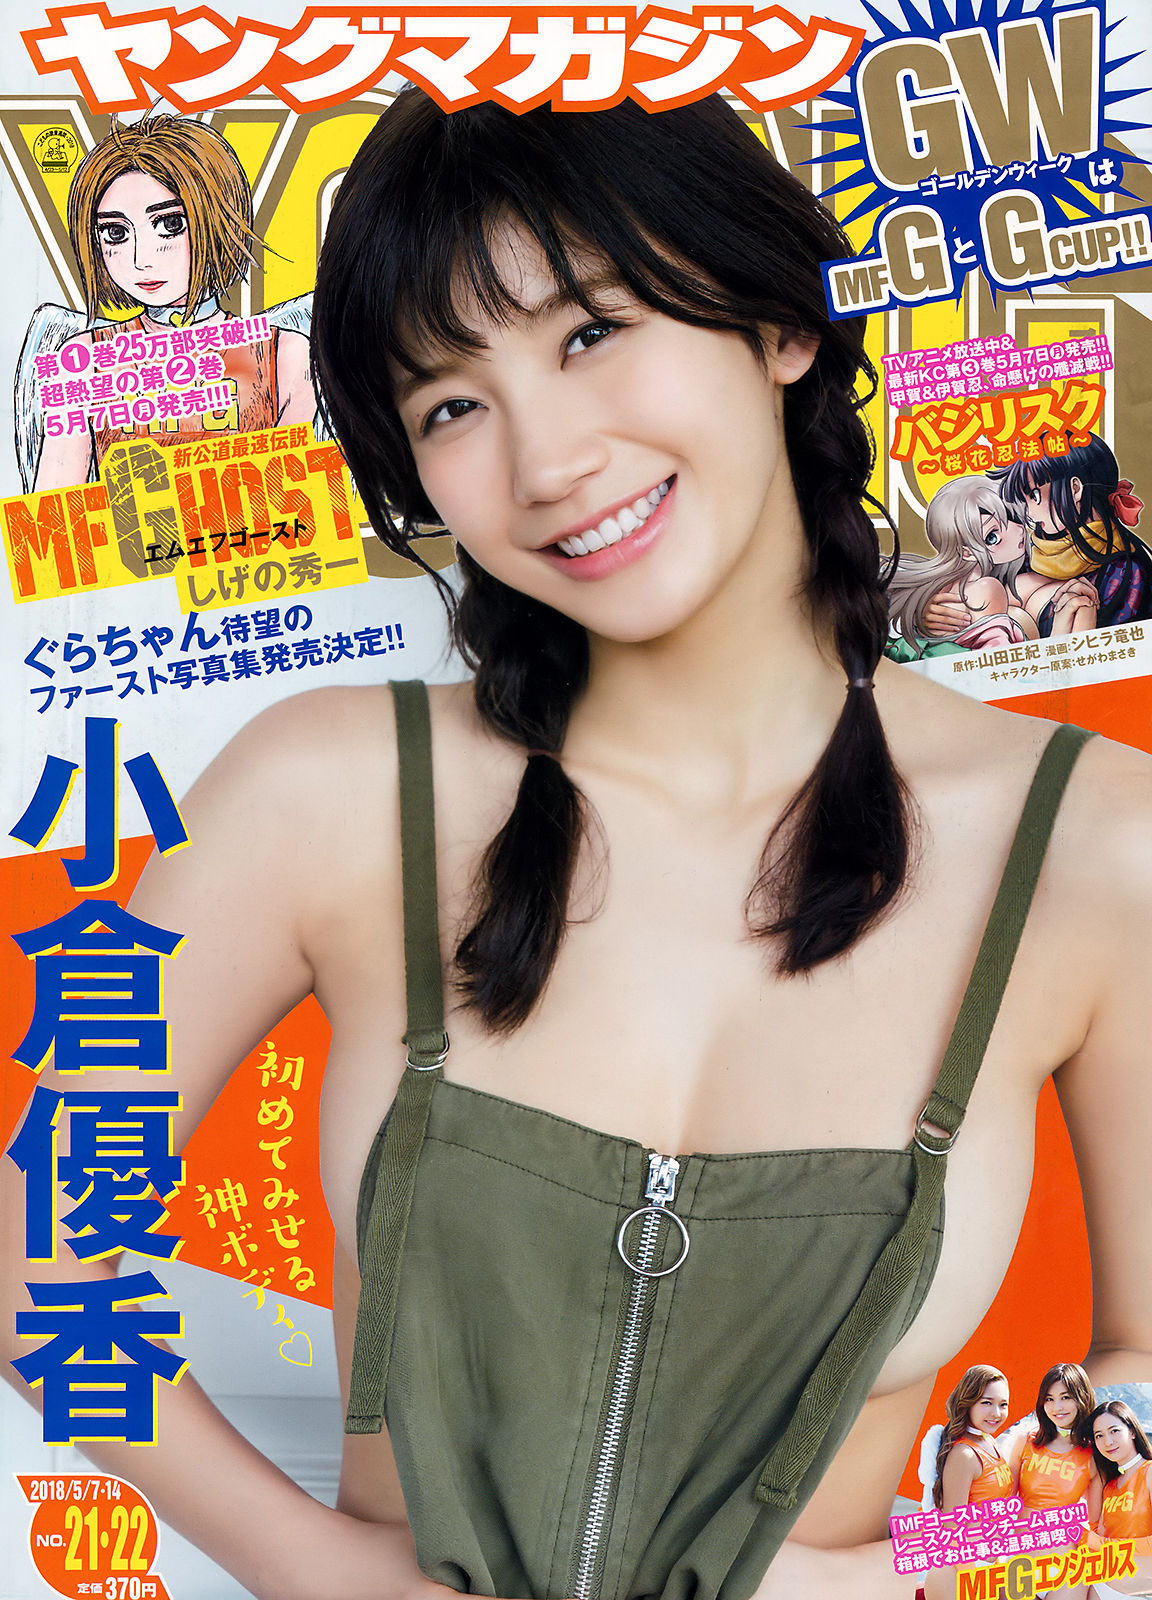 [Young Magazine]日本嫩模:小仓优香(小倉優香)无水印写真作品免费在线(12P)